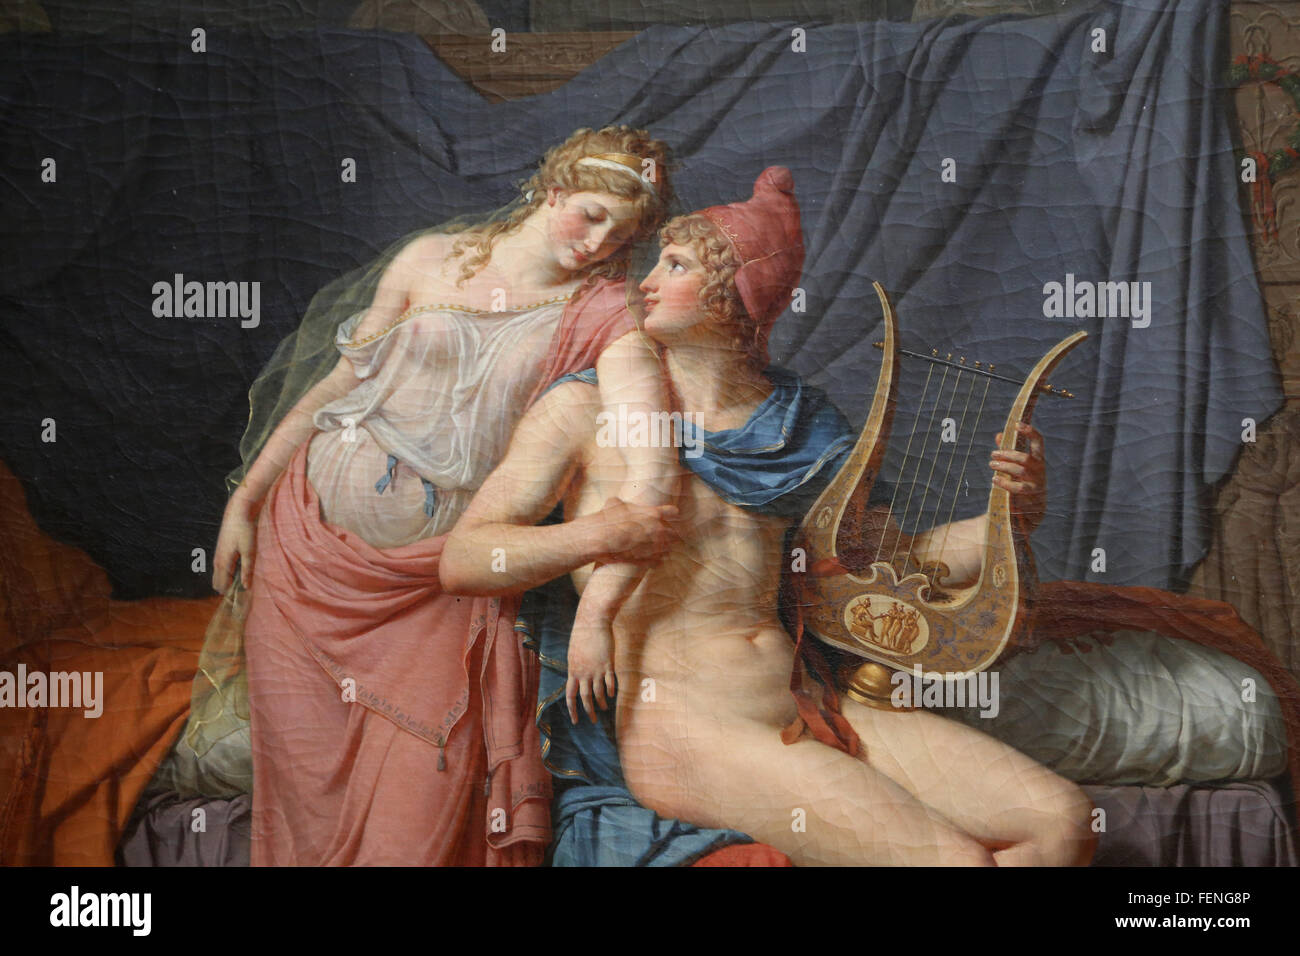 Die Liebe von Paris und Helena, 1788. Öl auf Leinwand. Von Jacques-Louis David (1748-1825). Neoklassizismus. Louvre-Museum. Paris. Fran Stockfoto